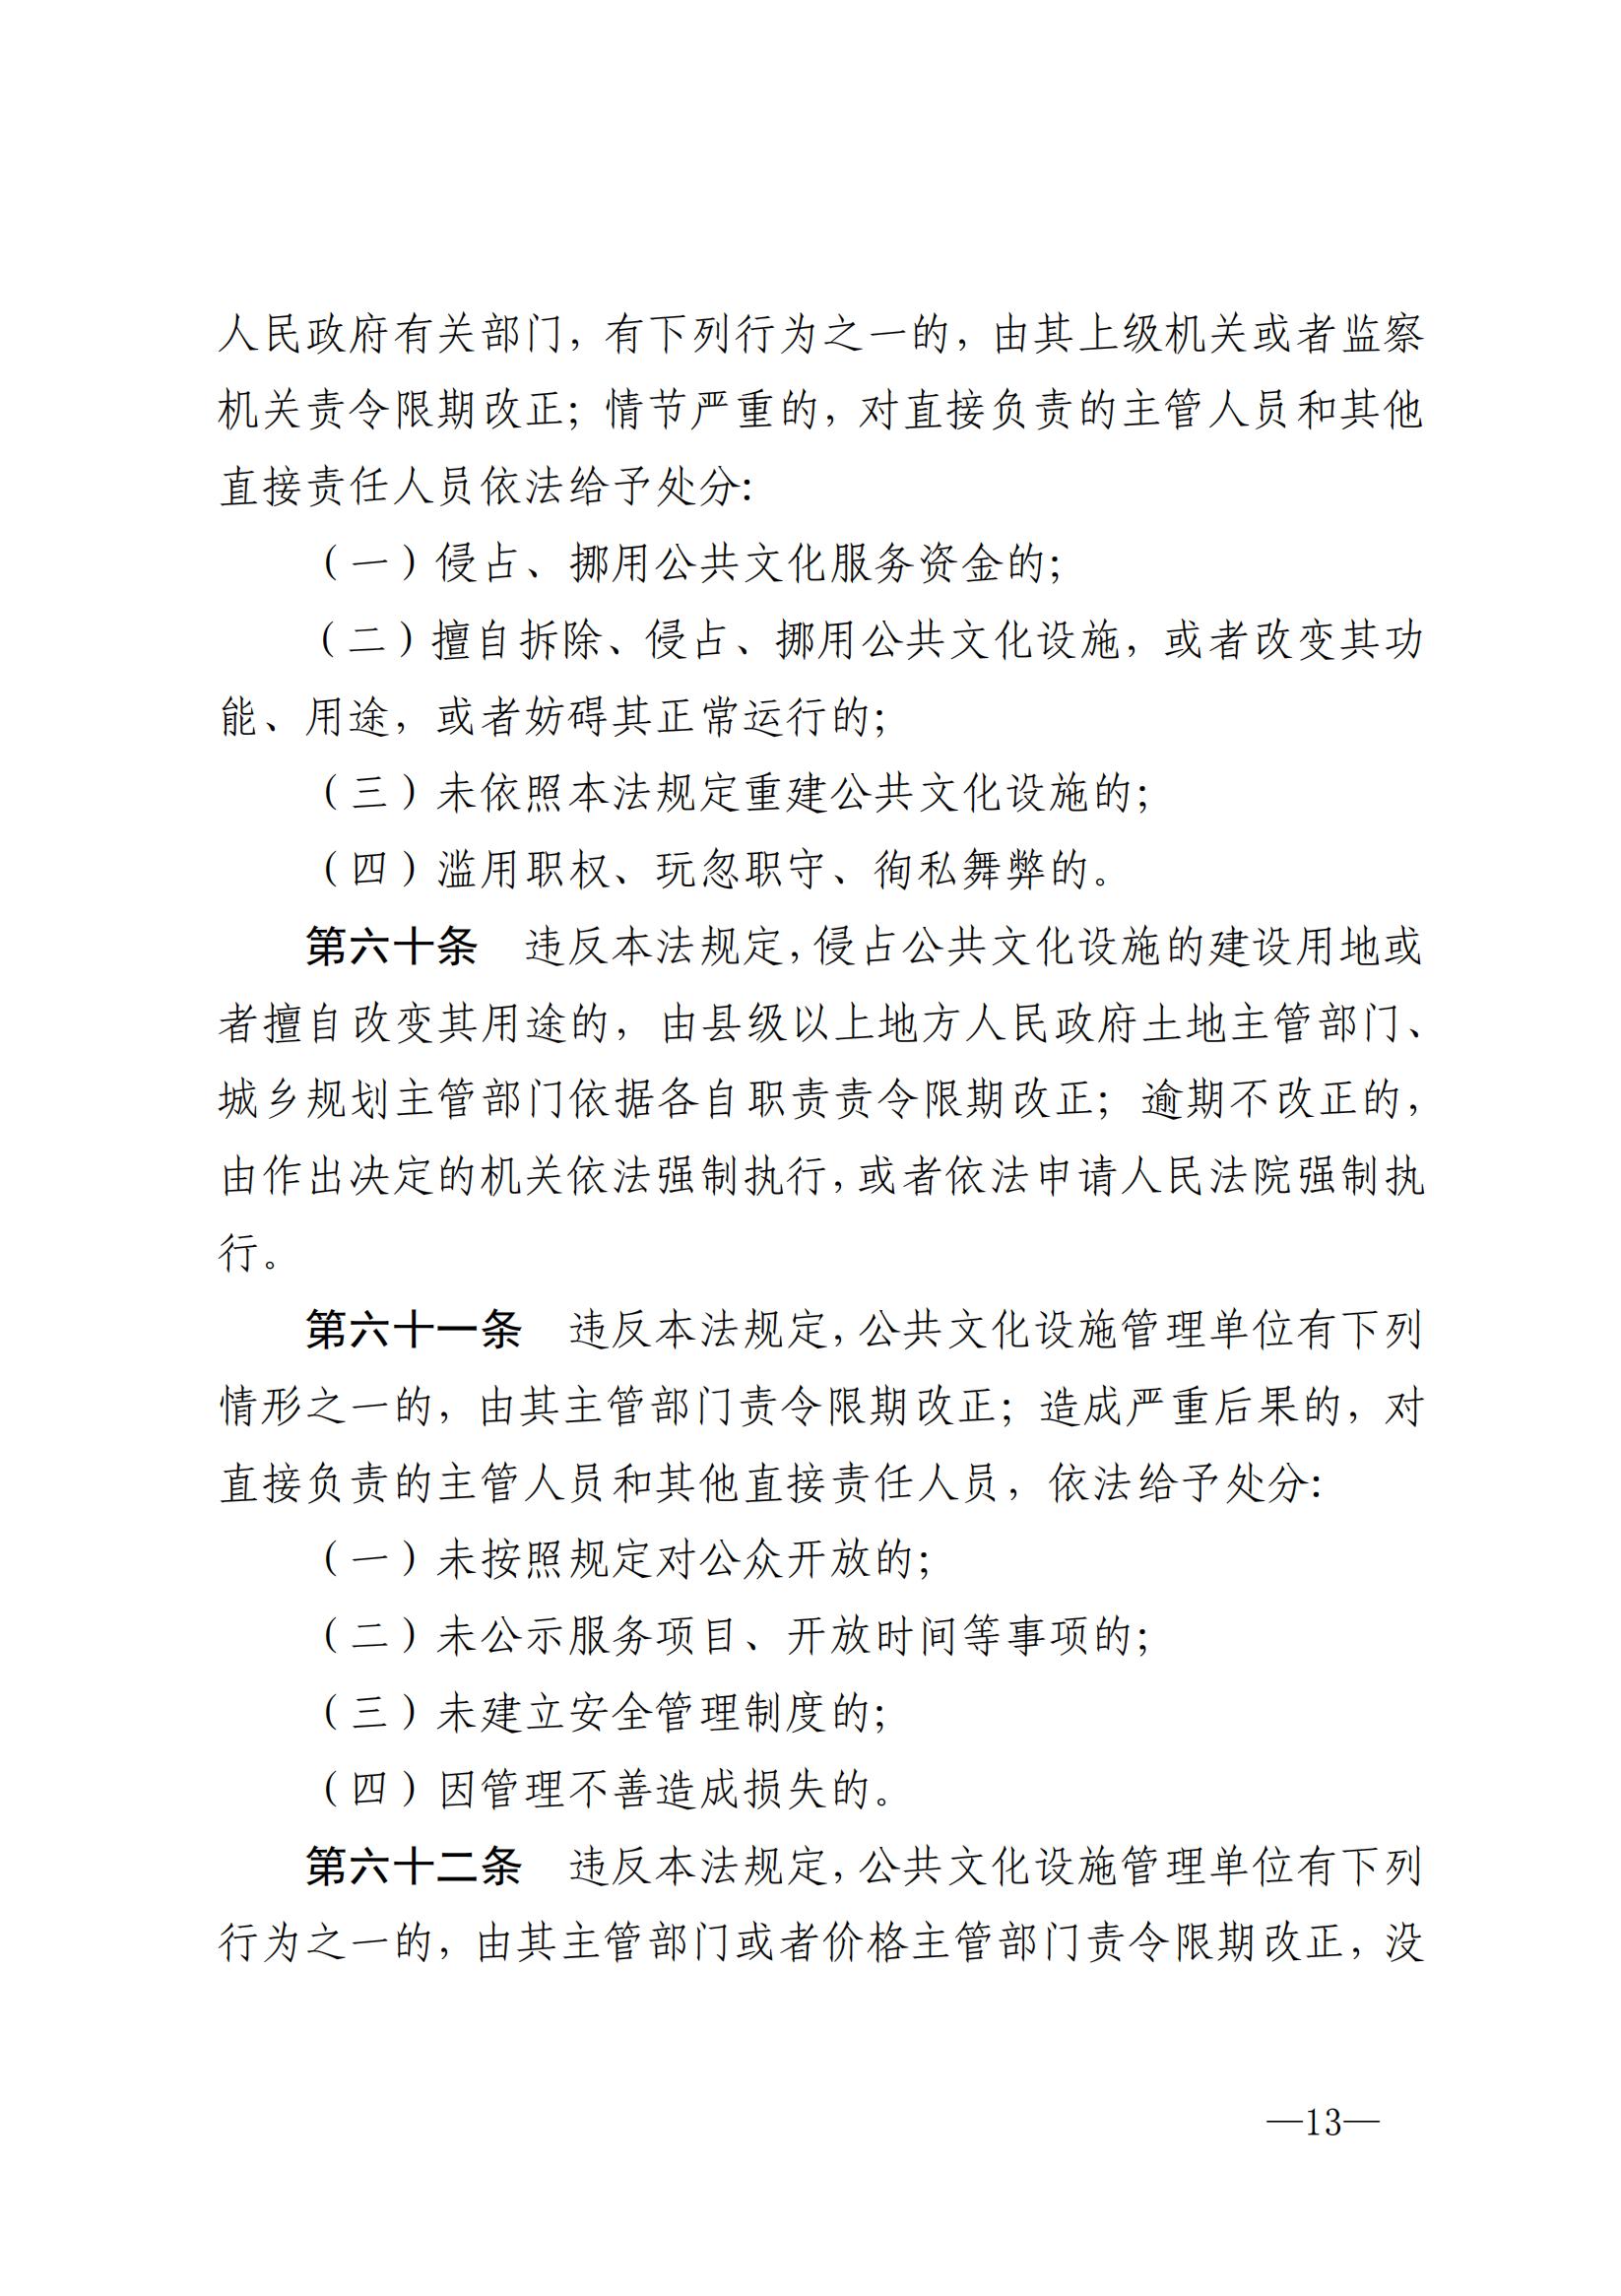 中华人民共和国公共文化服务保障法_12.jpg